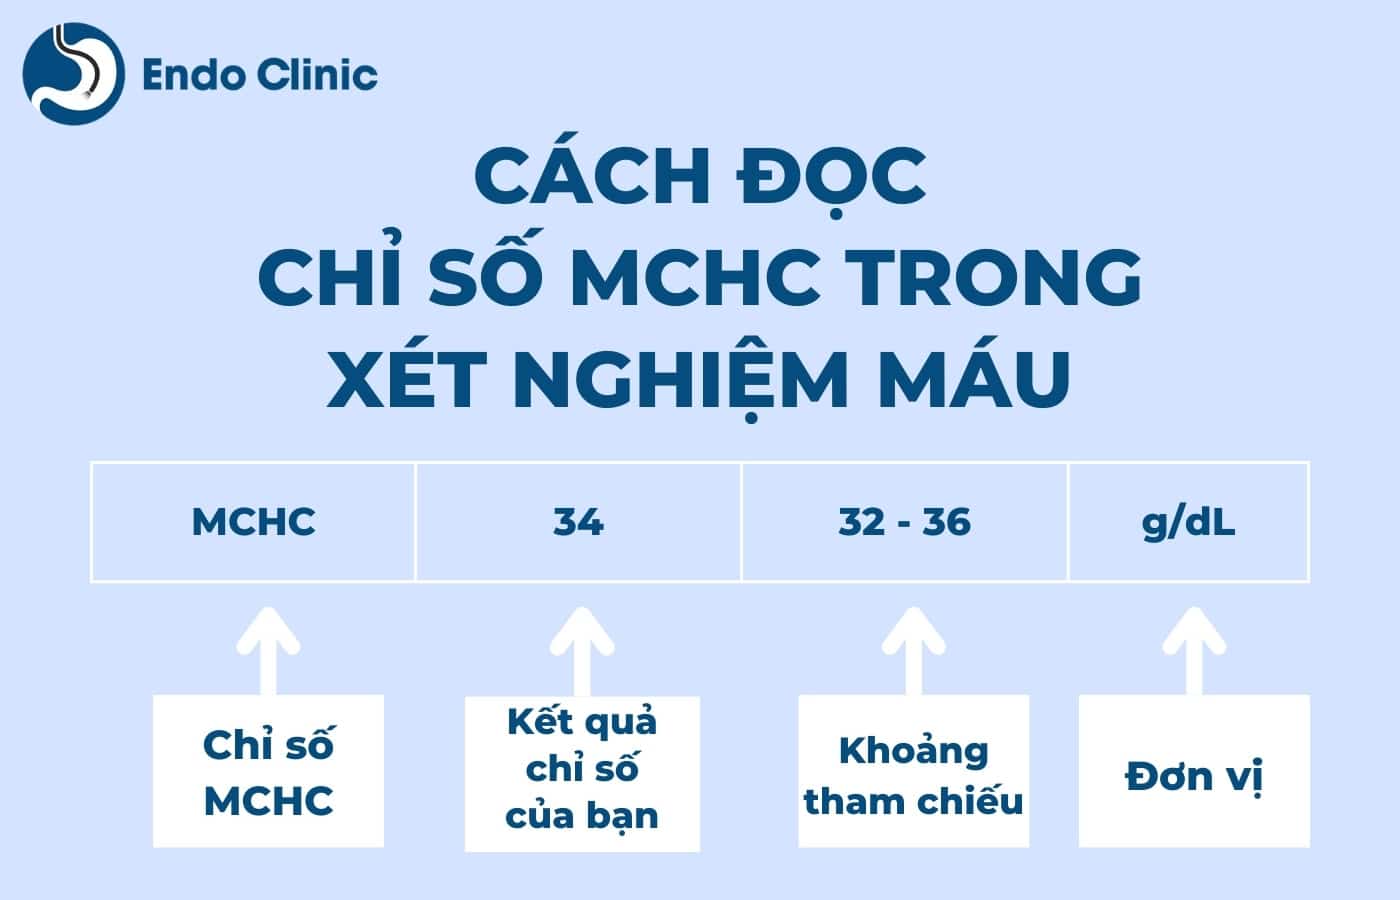 Cách đọc chỉ số MCHC trong xét nghiệm công thức máu như thế nào?